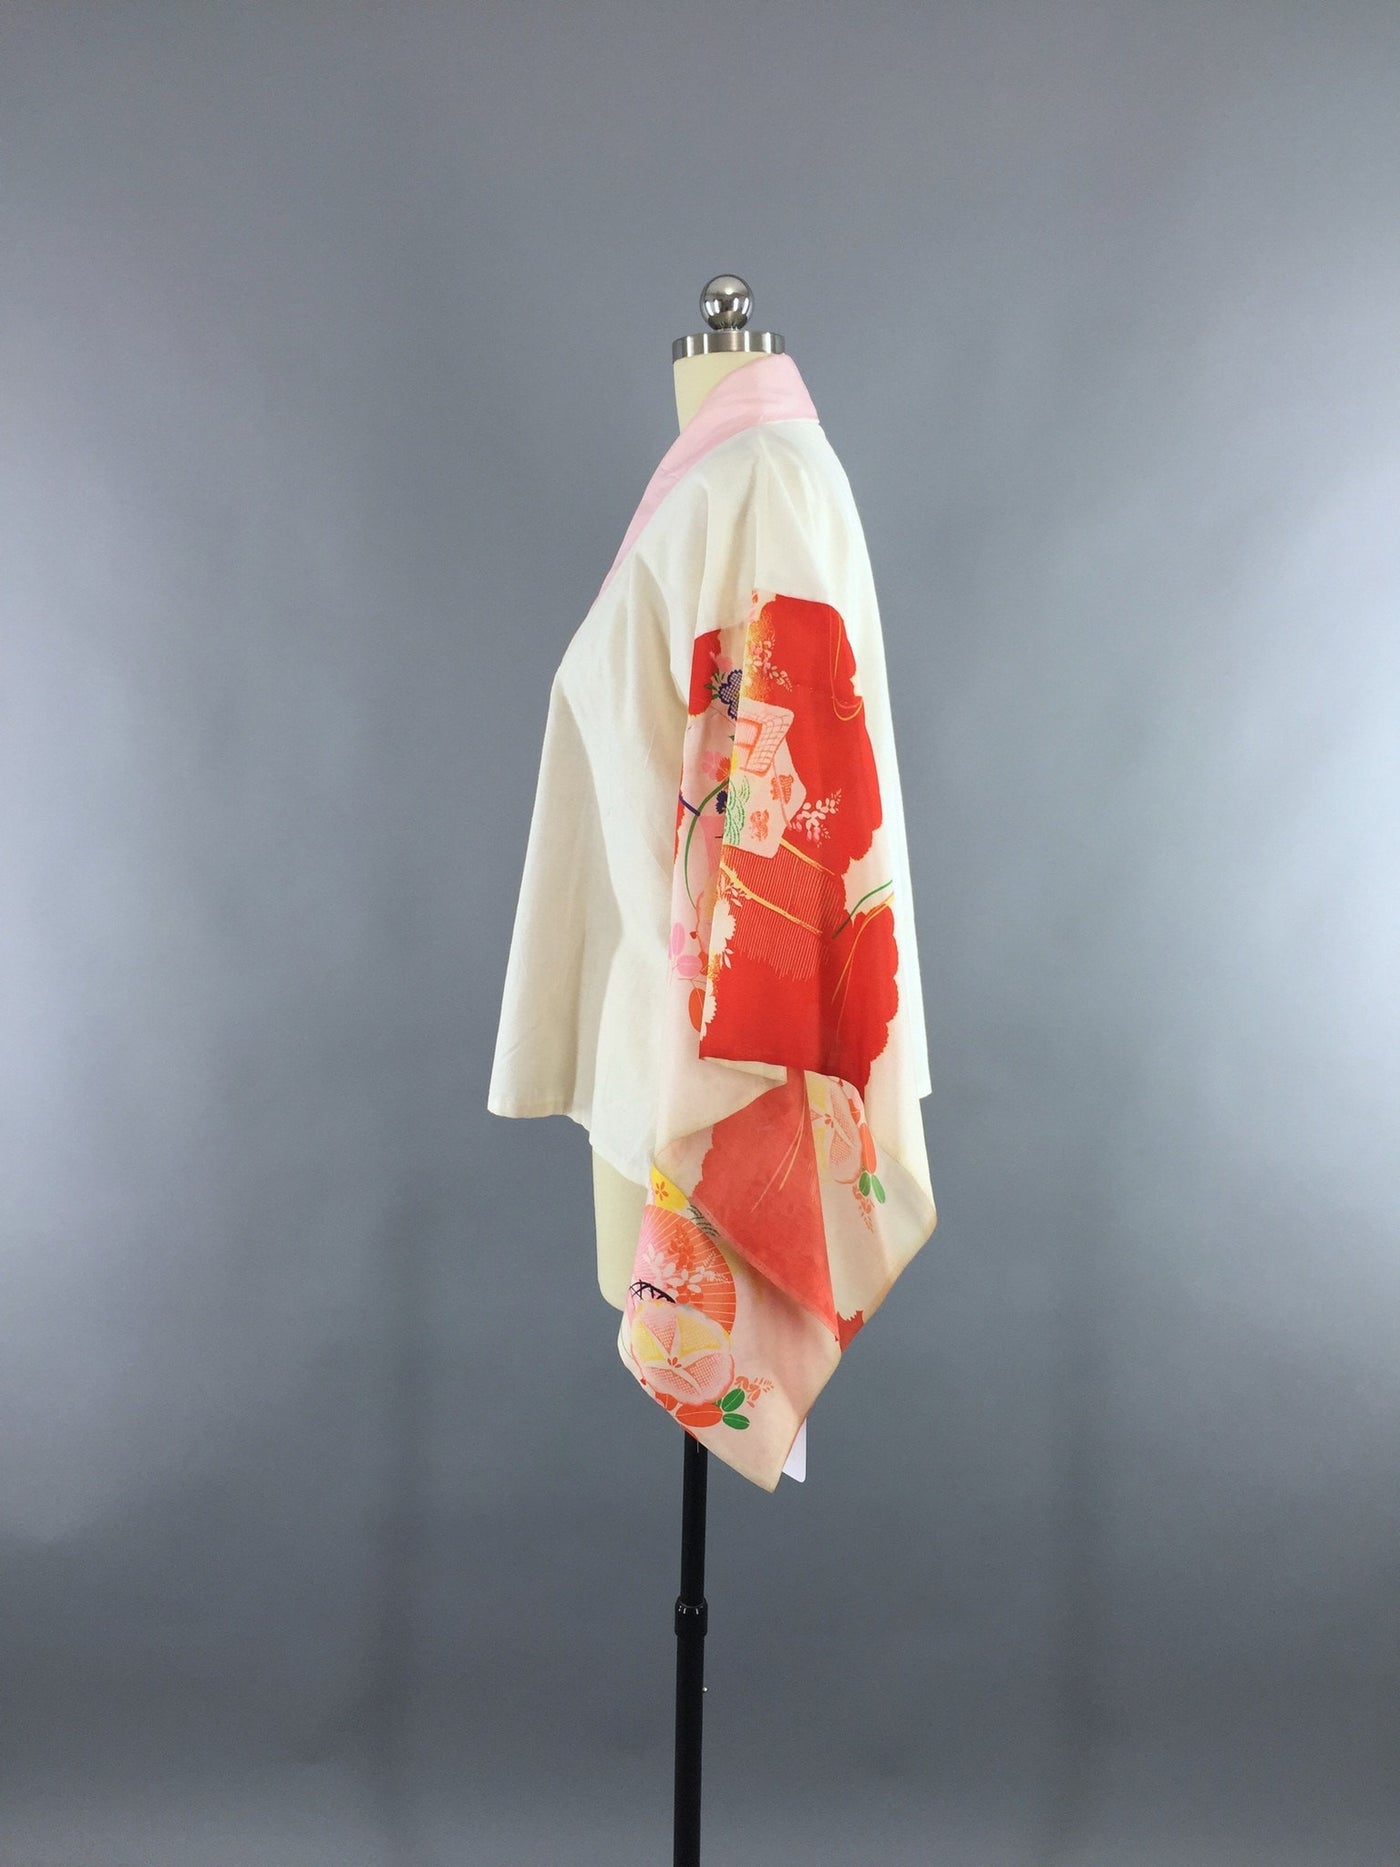 Vintage 1960s Kimono Jacket Haori Cardigan  White Cotton Han-Juban - ThisBlueBird